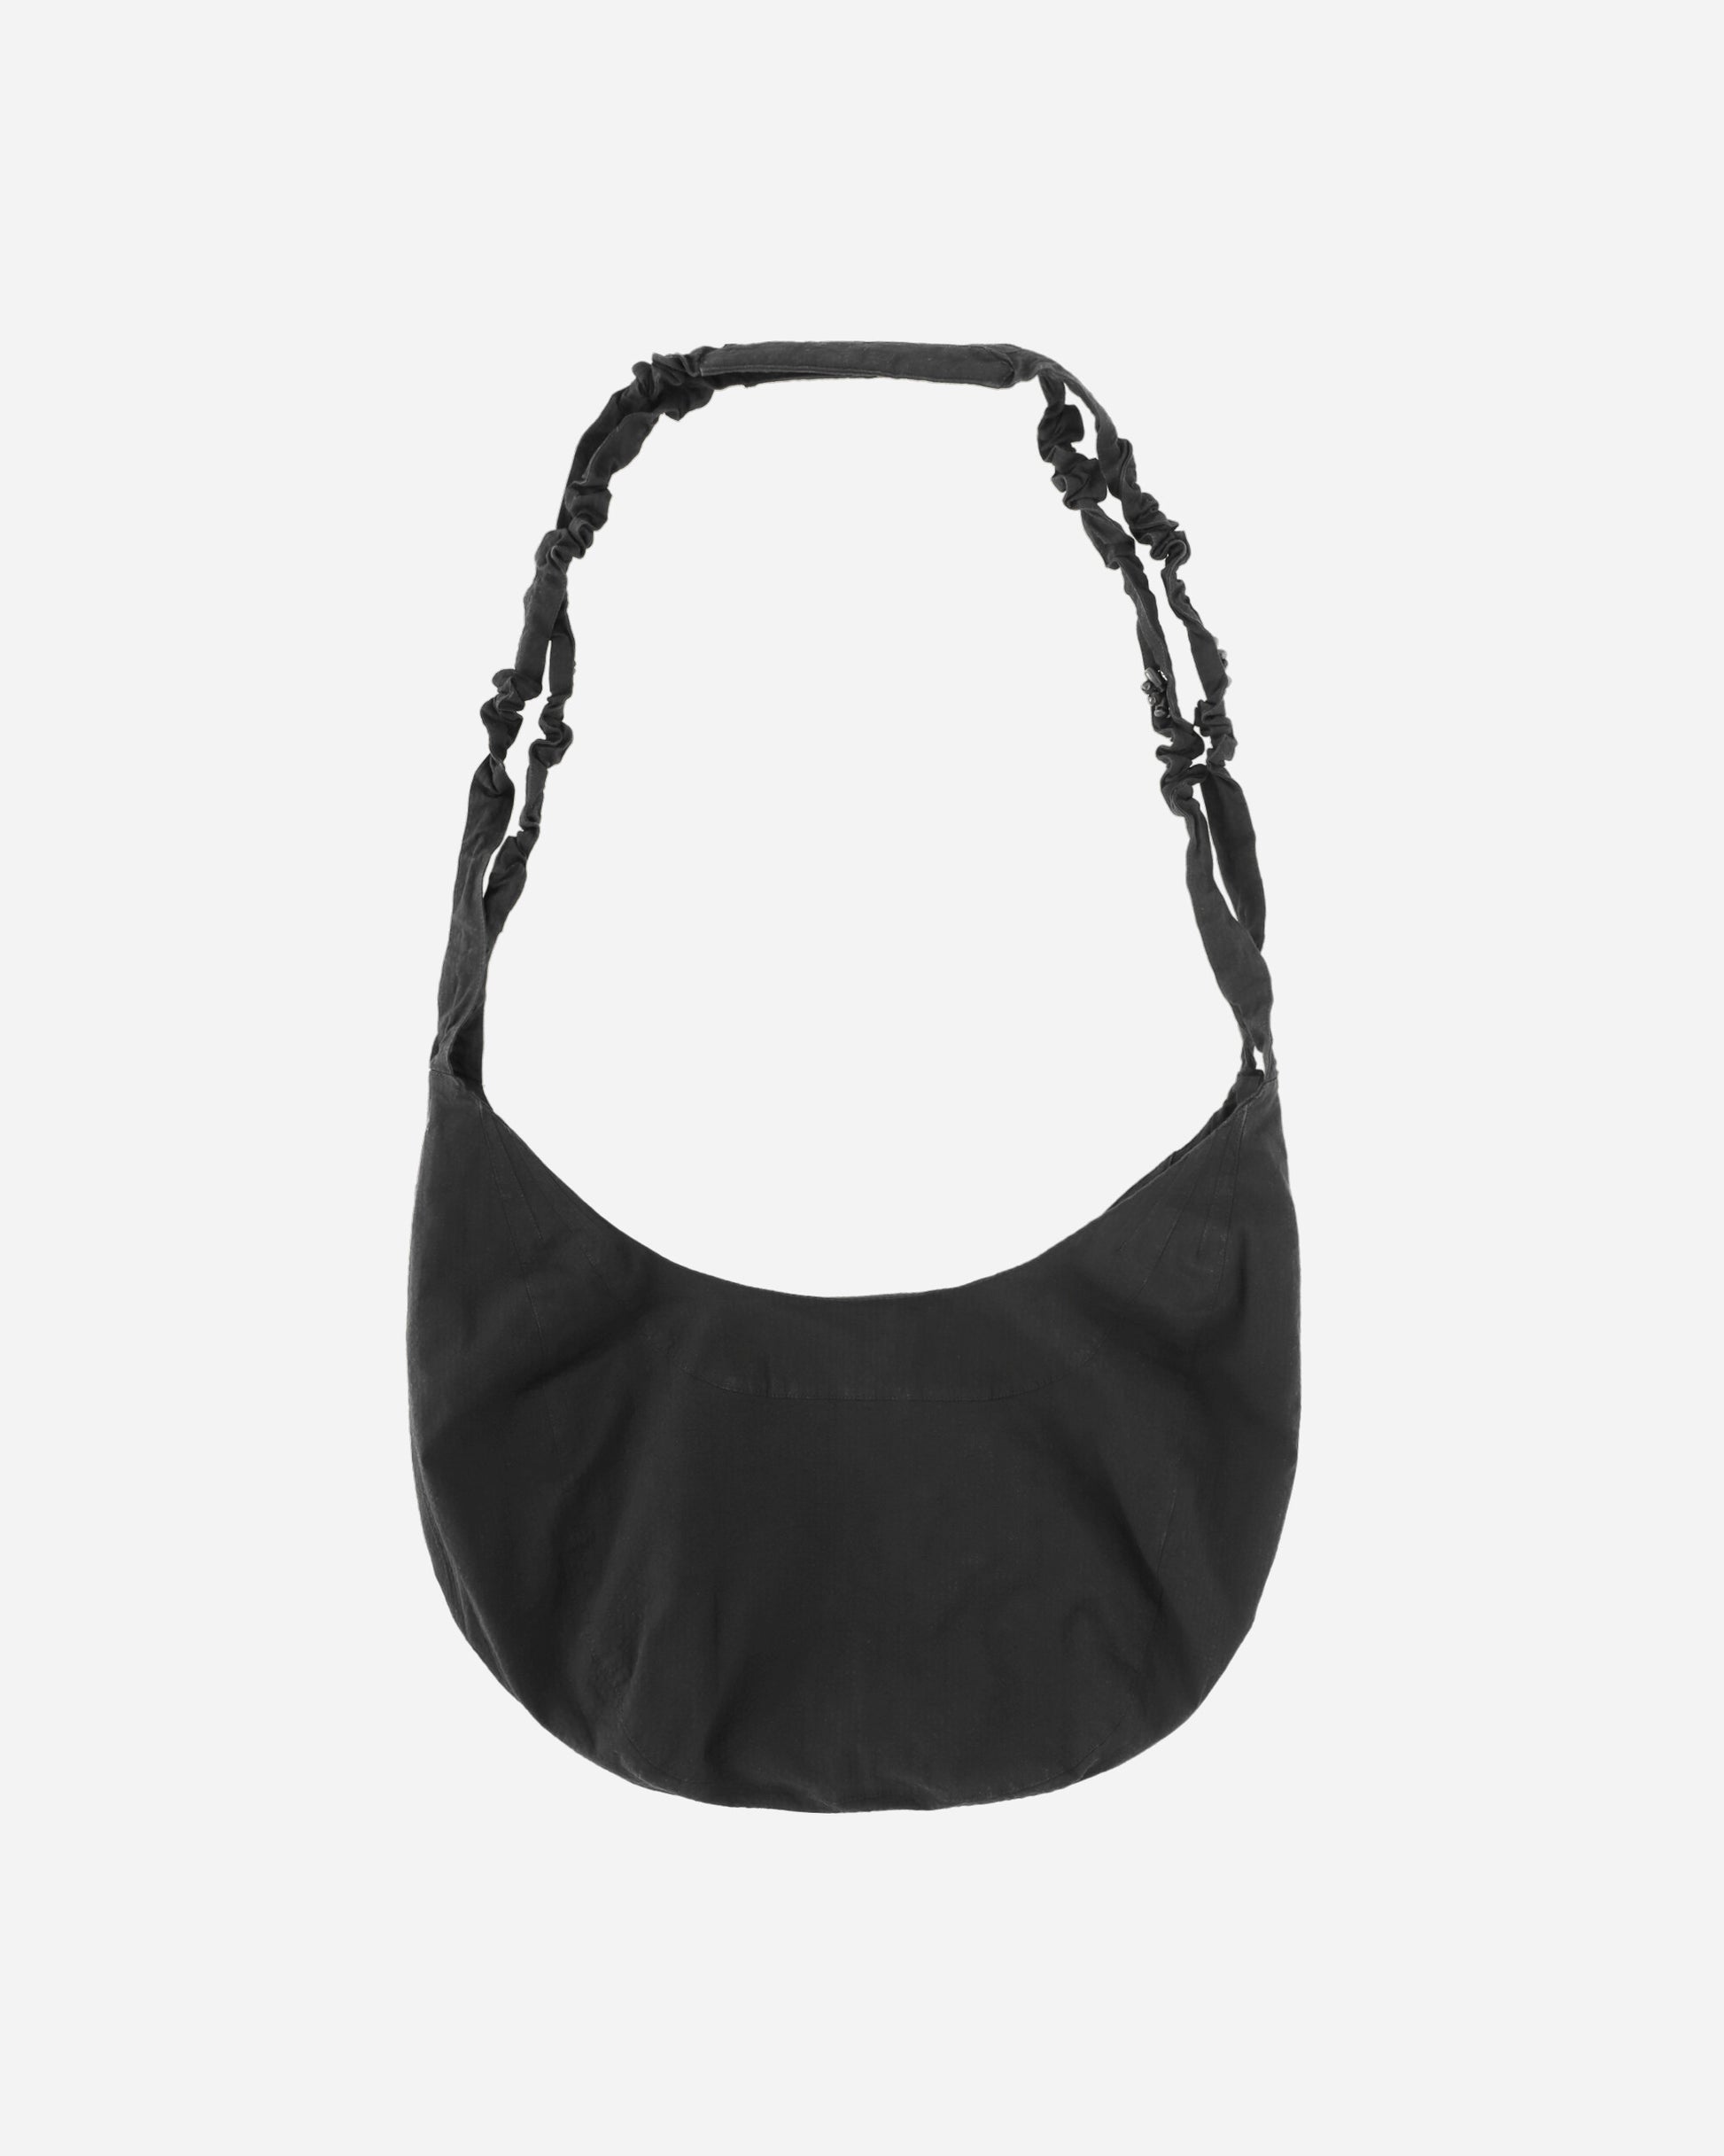 _J.L-A.L_ Torsade Bag Black Bags and Backpacks Shoulder Bags JBUW202FA02 BLK0001